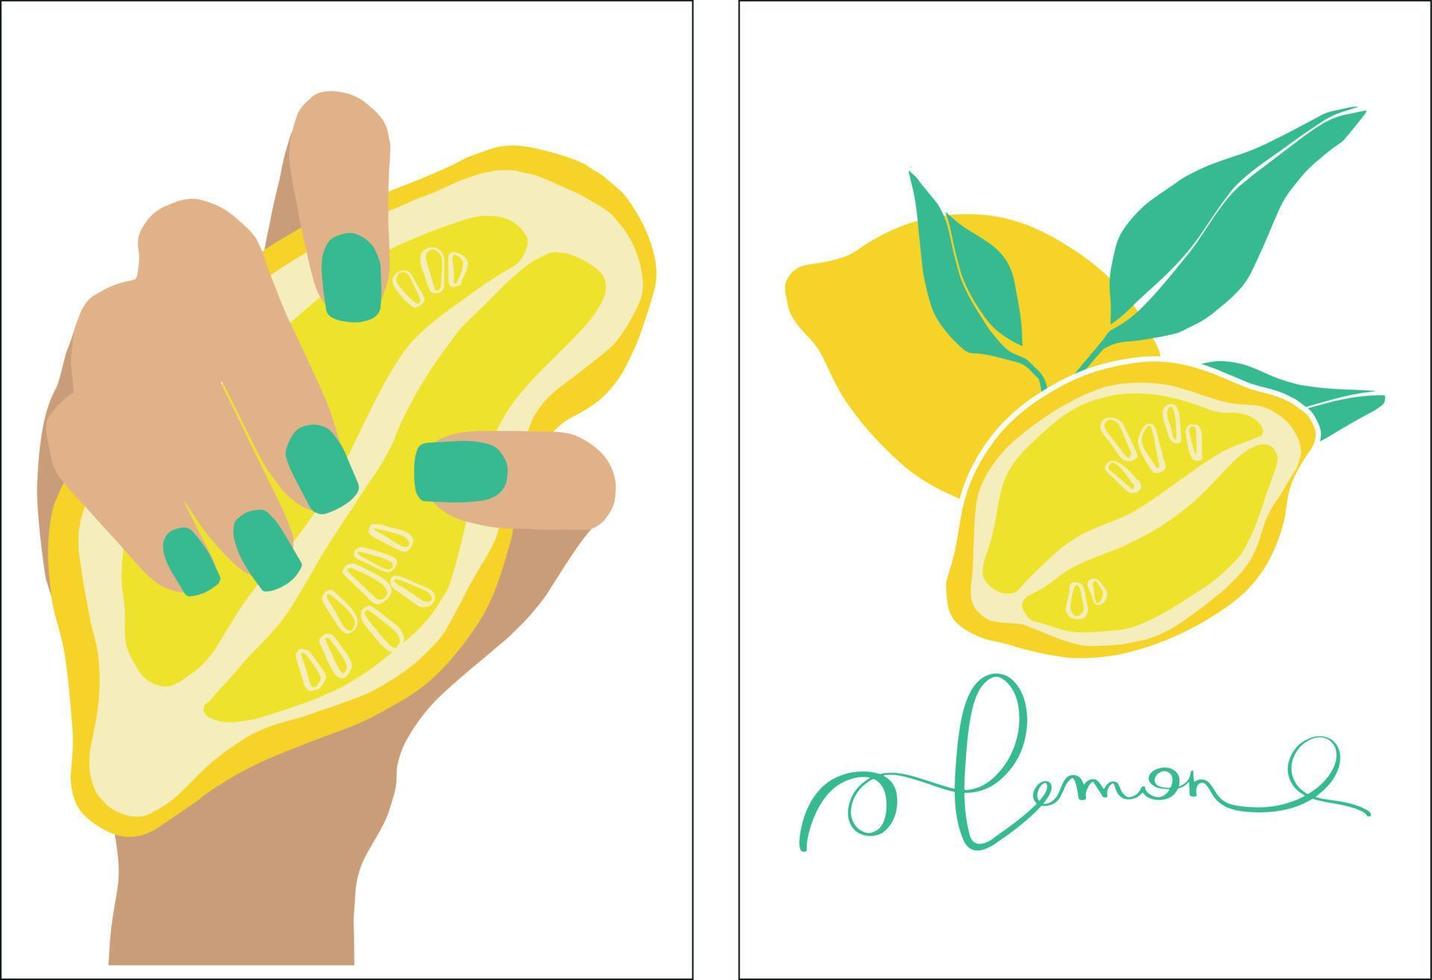 limão em estilo moderno. a mão de uma mulher com manicure segura um limão. conjunto de cartaz de ilustração vetorial. ilustração em vetor moda contemporânea moderna. fundo abstrato mínimo. design de impressão.